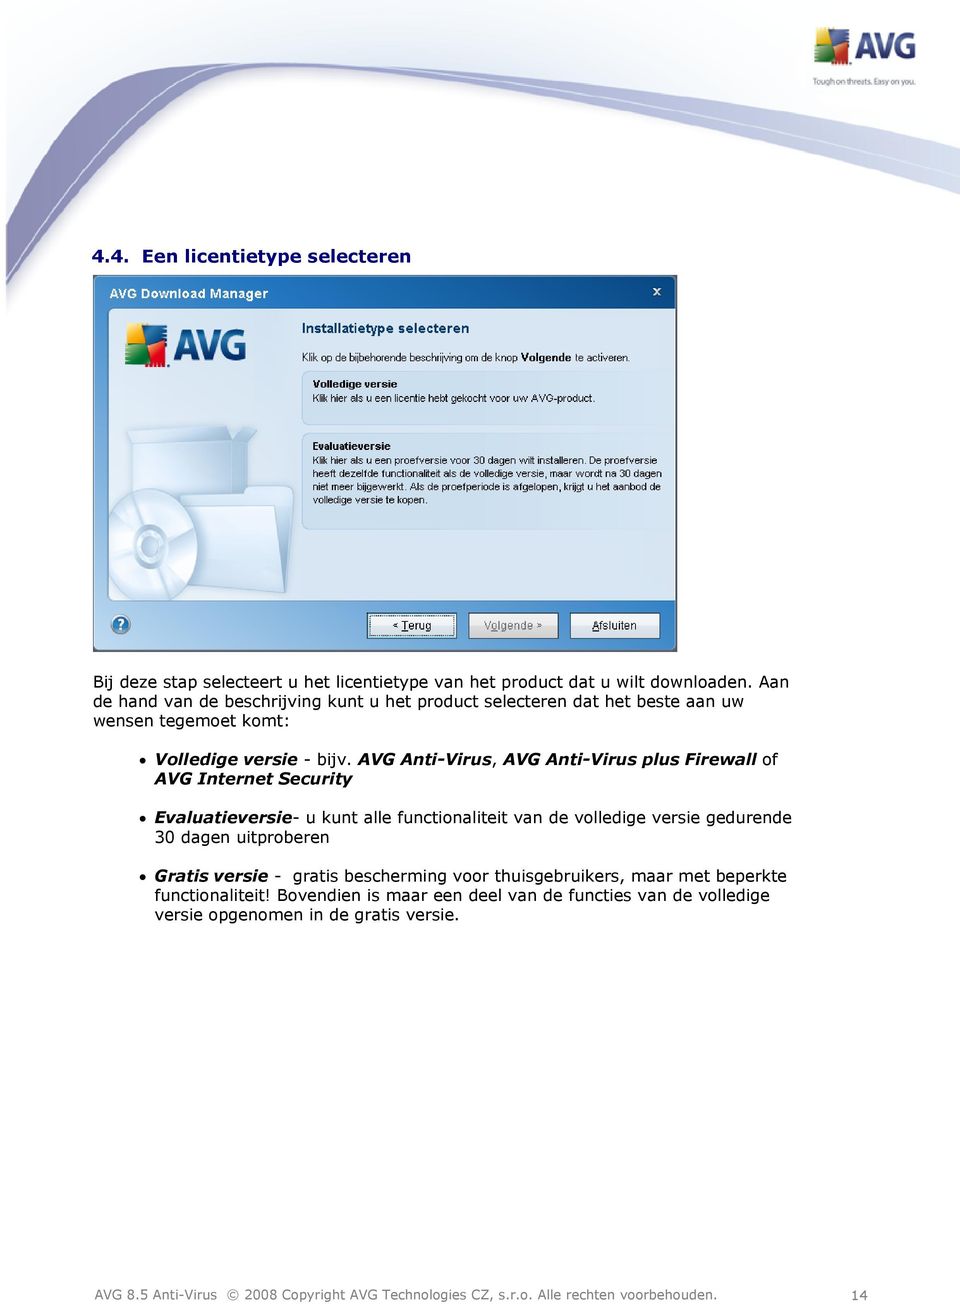 AVG Anti-Virus, AVG Anti-Virus plus Firewall of AVG Internet Security Evaluatieversie- u kunt alle functionaliteit van de volledige versie gedurende 30